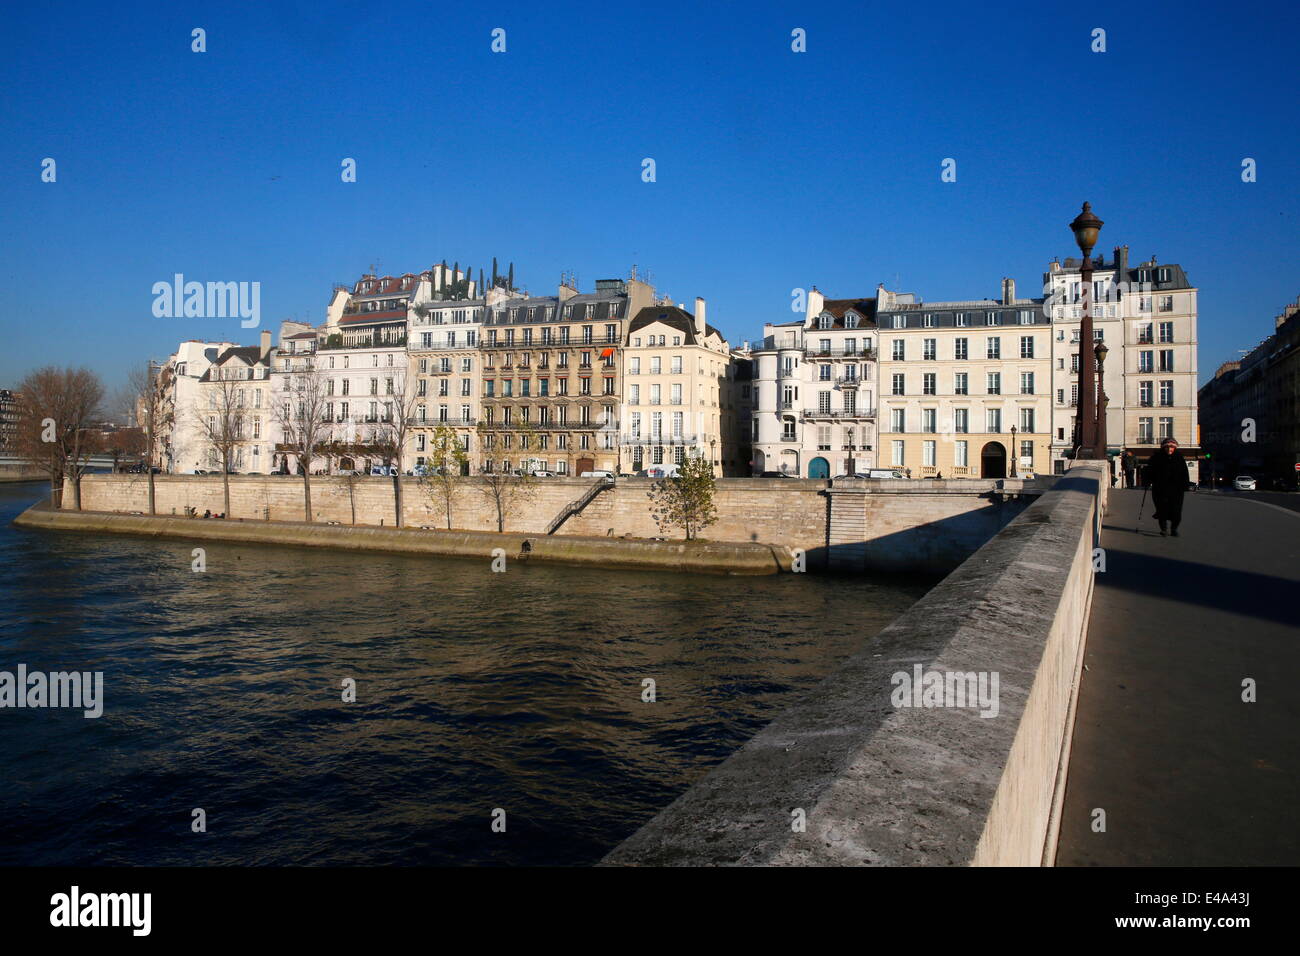 Quai d'Orleans, Ile Saint-Louis, Paris, France, Europe Stock Photo